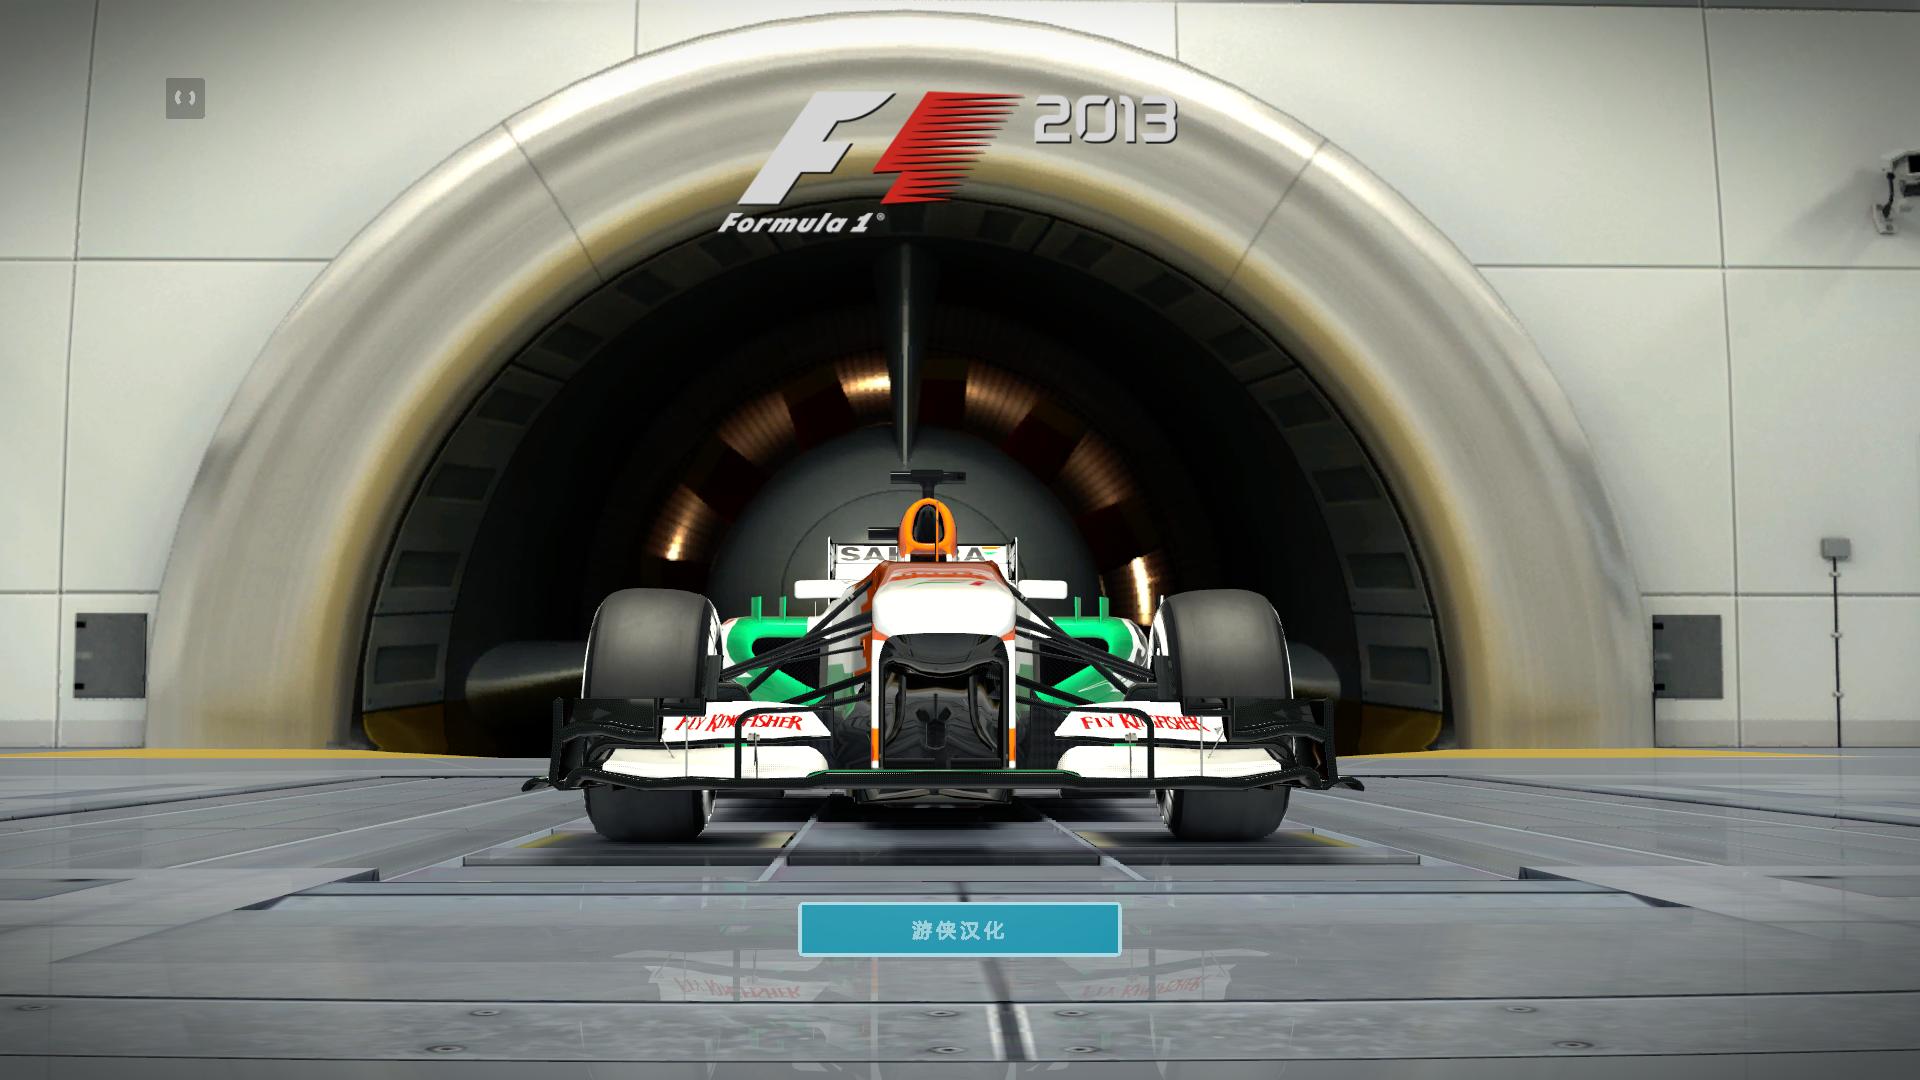 F1 2013F1 2013v1.0޸LinGon